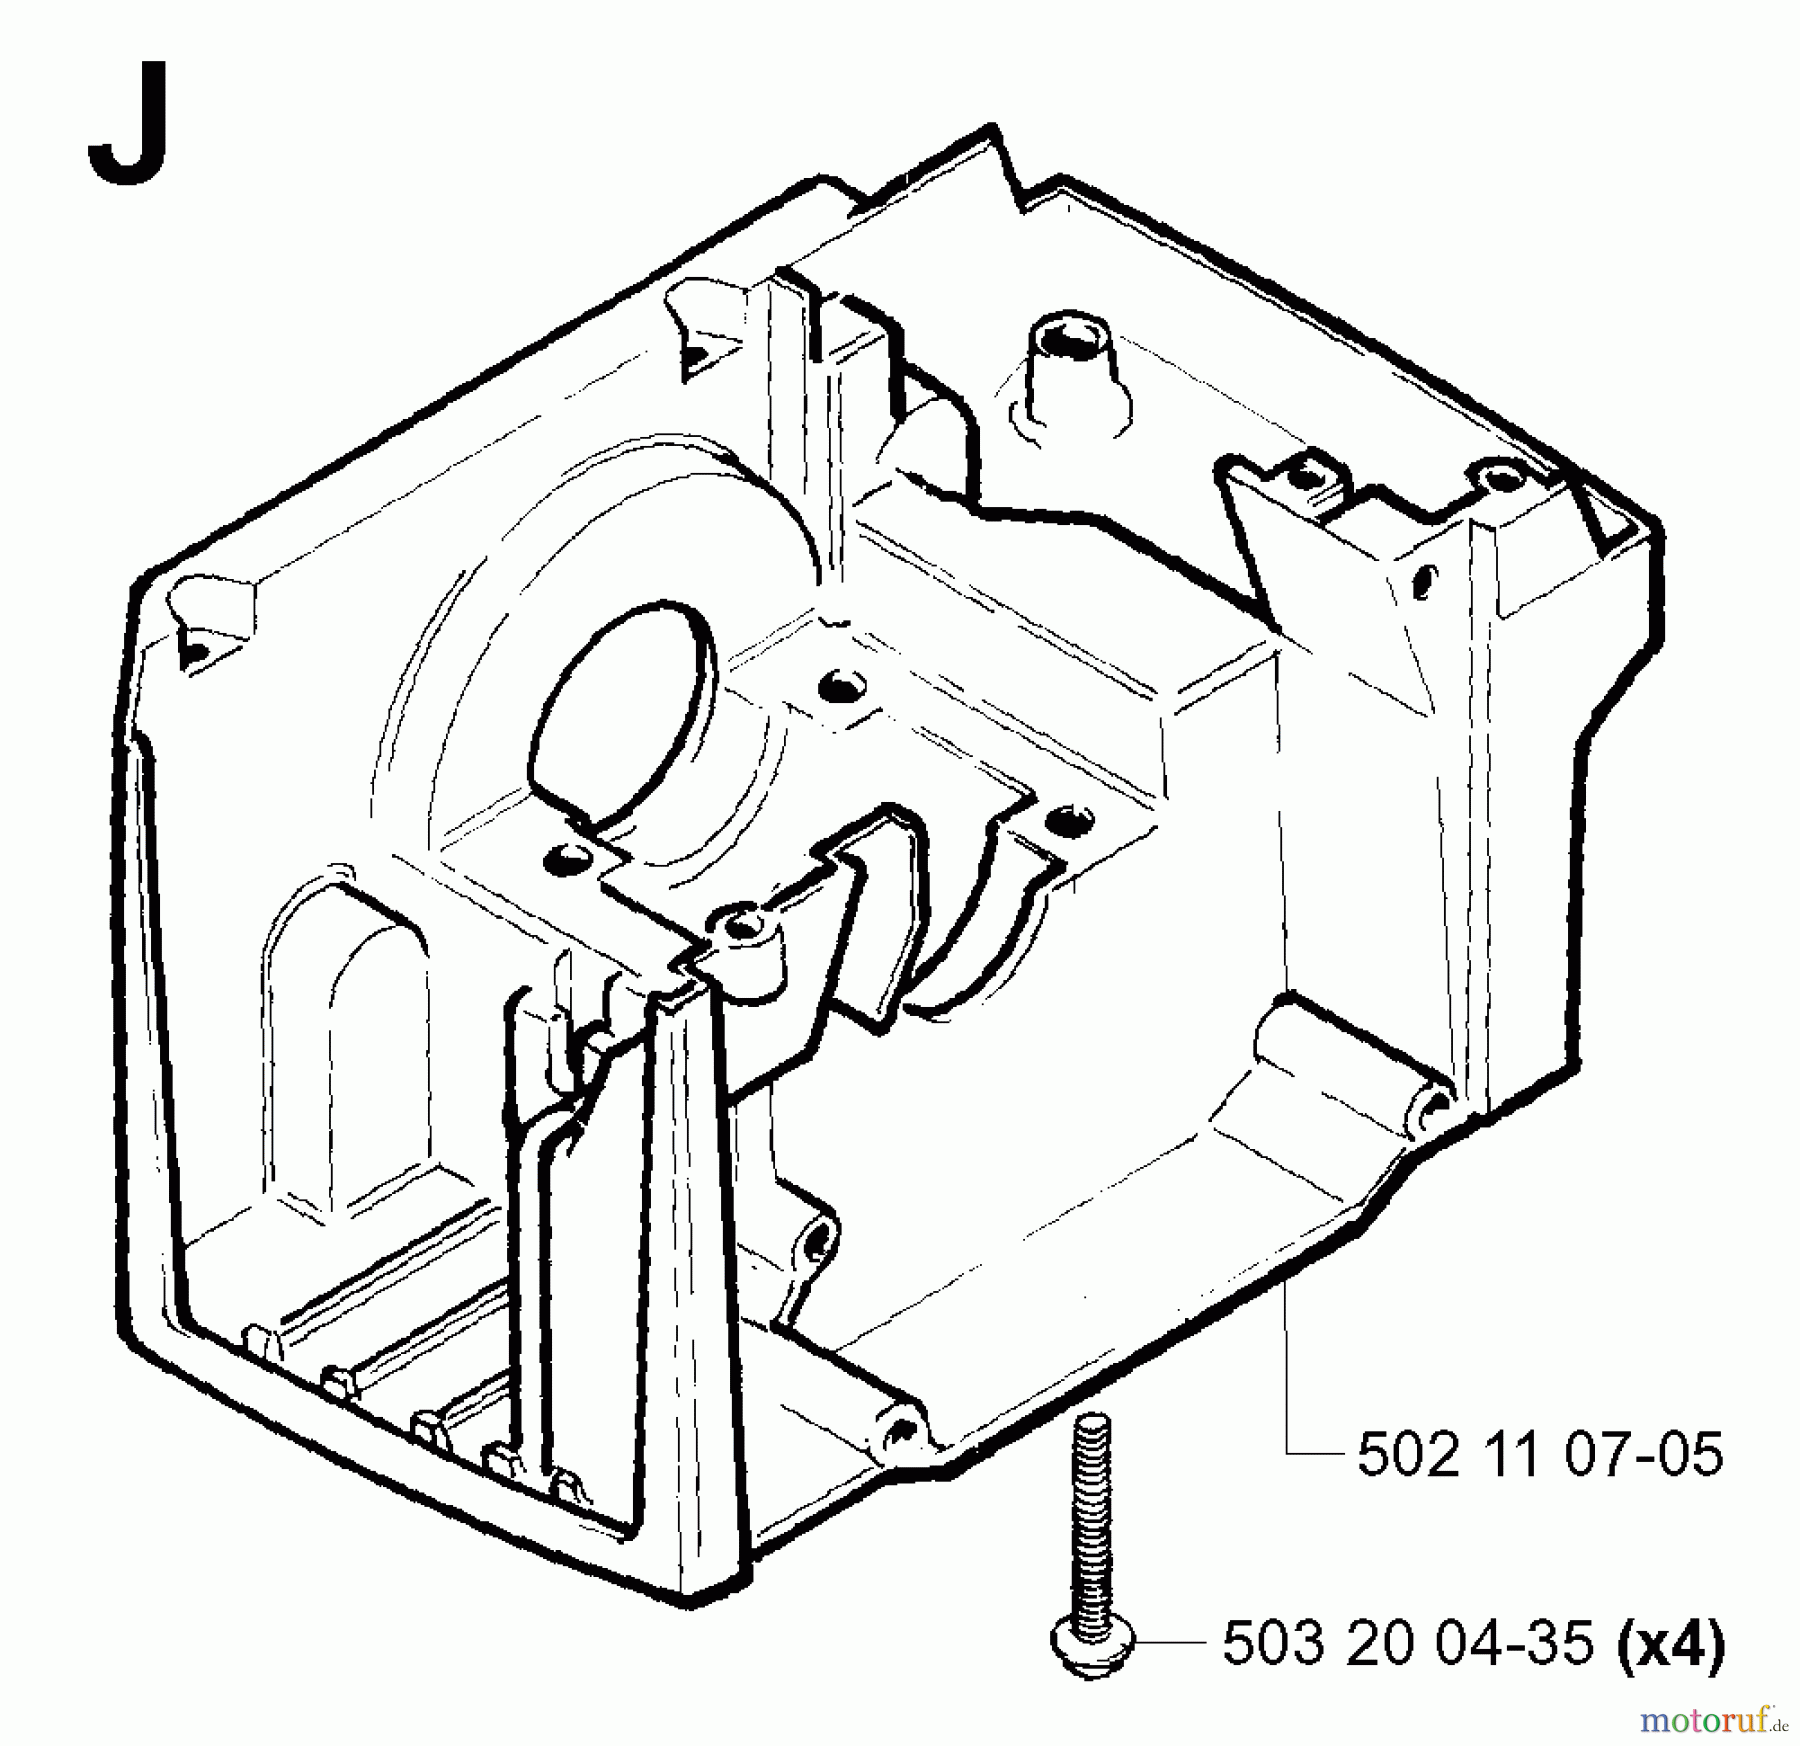  Jonsered Motorsensen, Trimmer RS44 EPA - Jonsered String/Brush Trimmer (2001-03) CRANKCASE